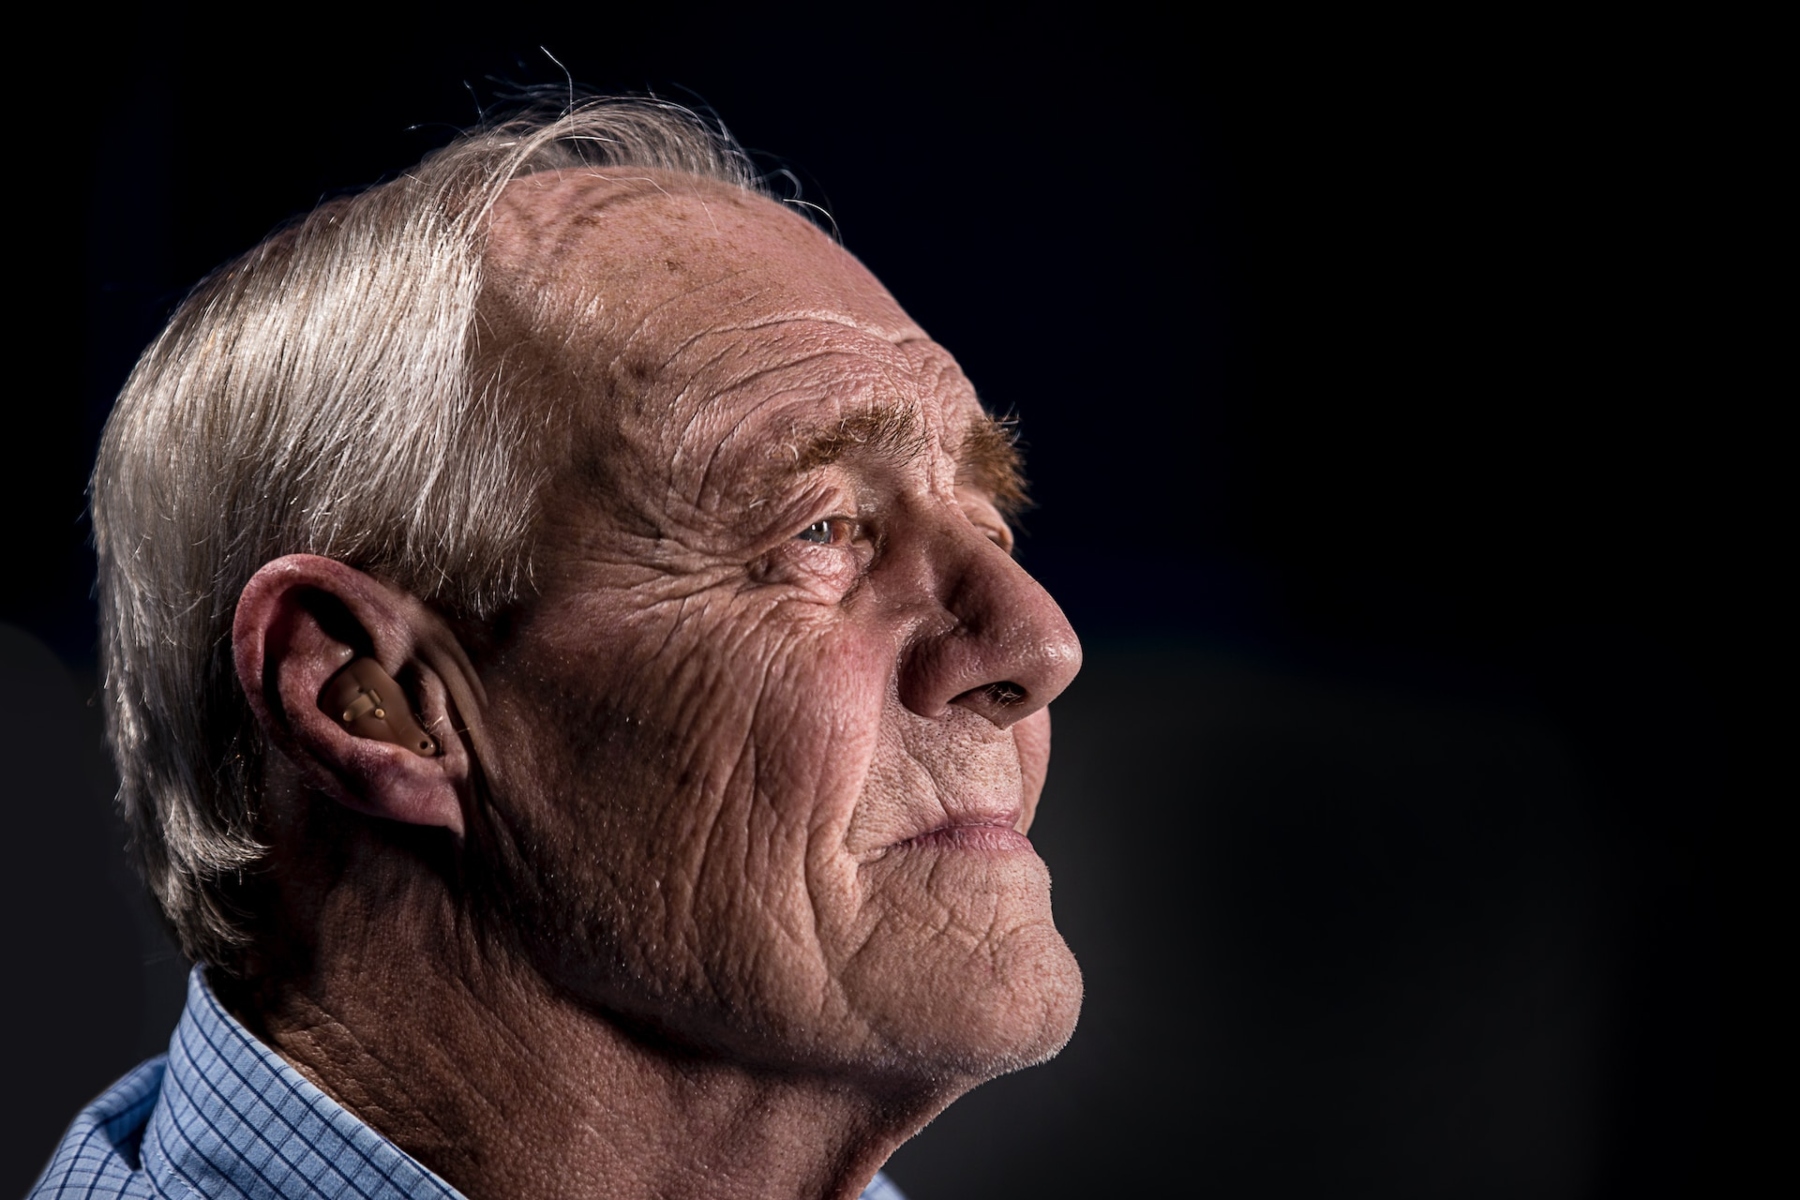 Καινοτομία ακοή: Ενδυνάμωση ψυχικής υγείας μέσω βελτιωμένων ακουστικών εμπειριών